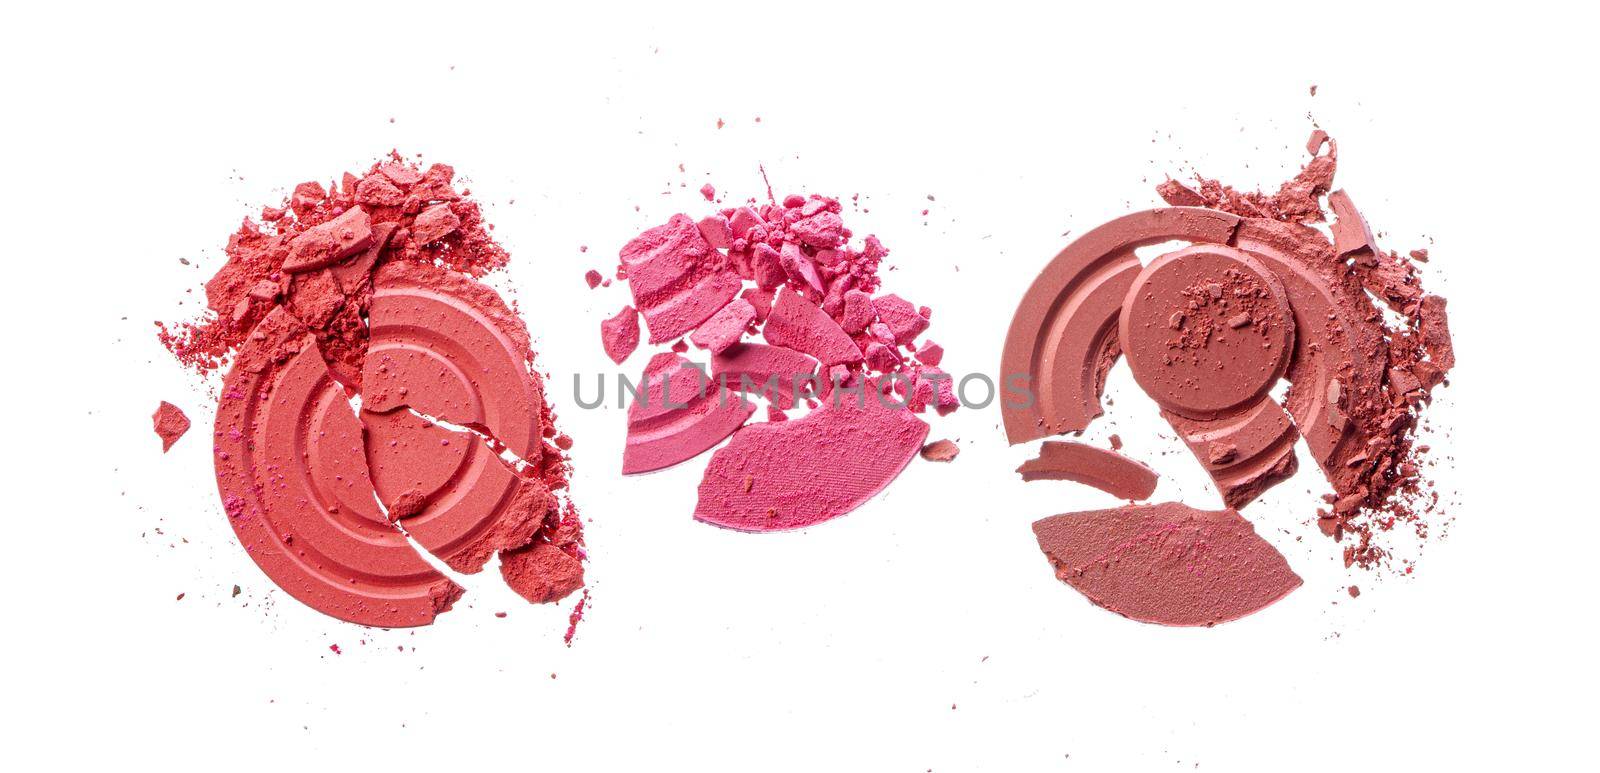 Smashed pink blush cosmetics isolated on white background by Fabrikasimf